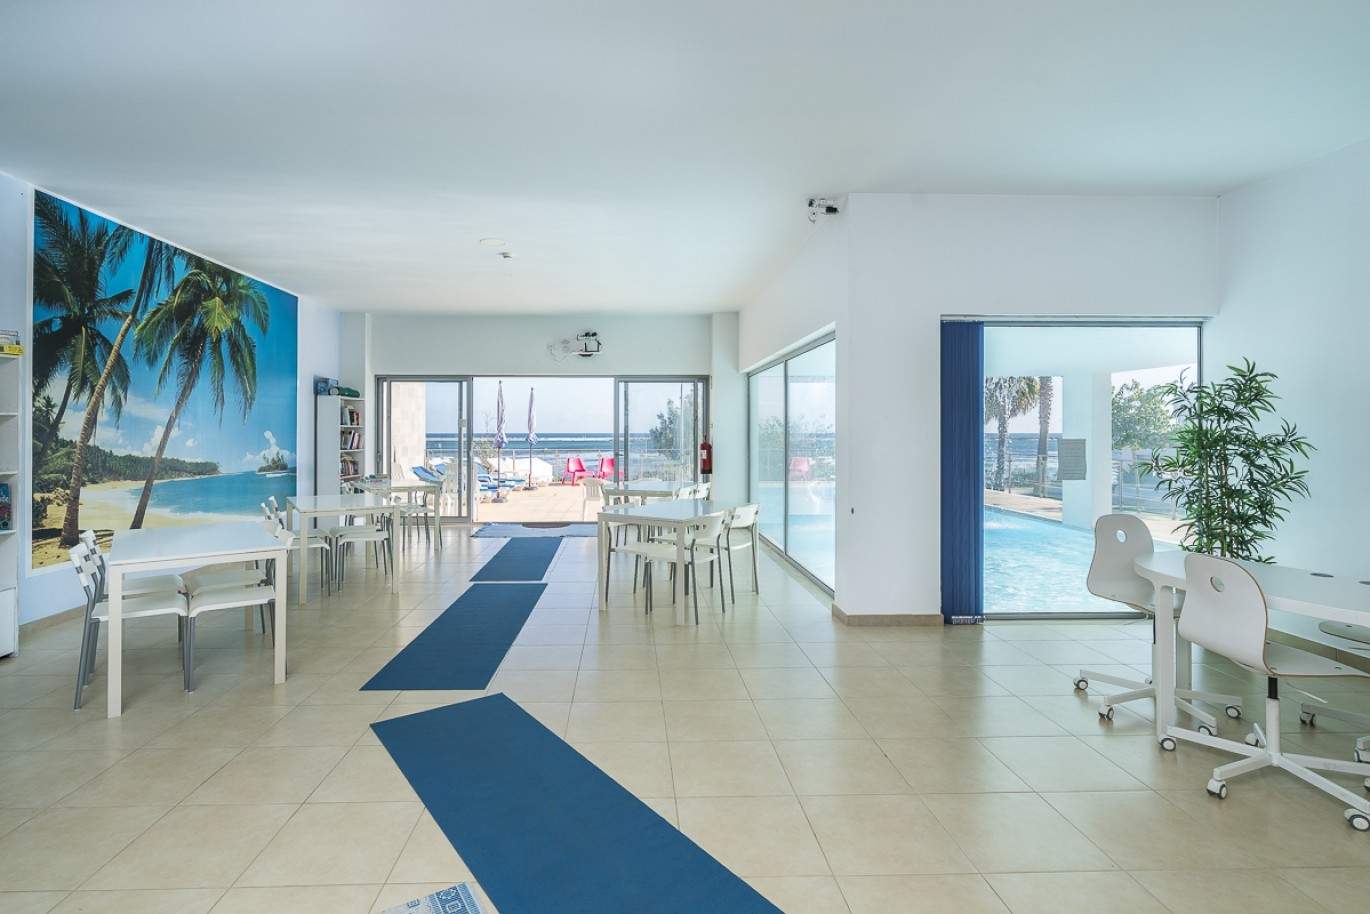 Área comercial en venta con piscina, cerca de playa, Algarve, Portugal_88781